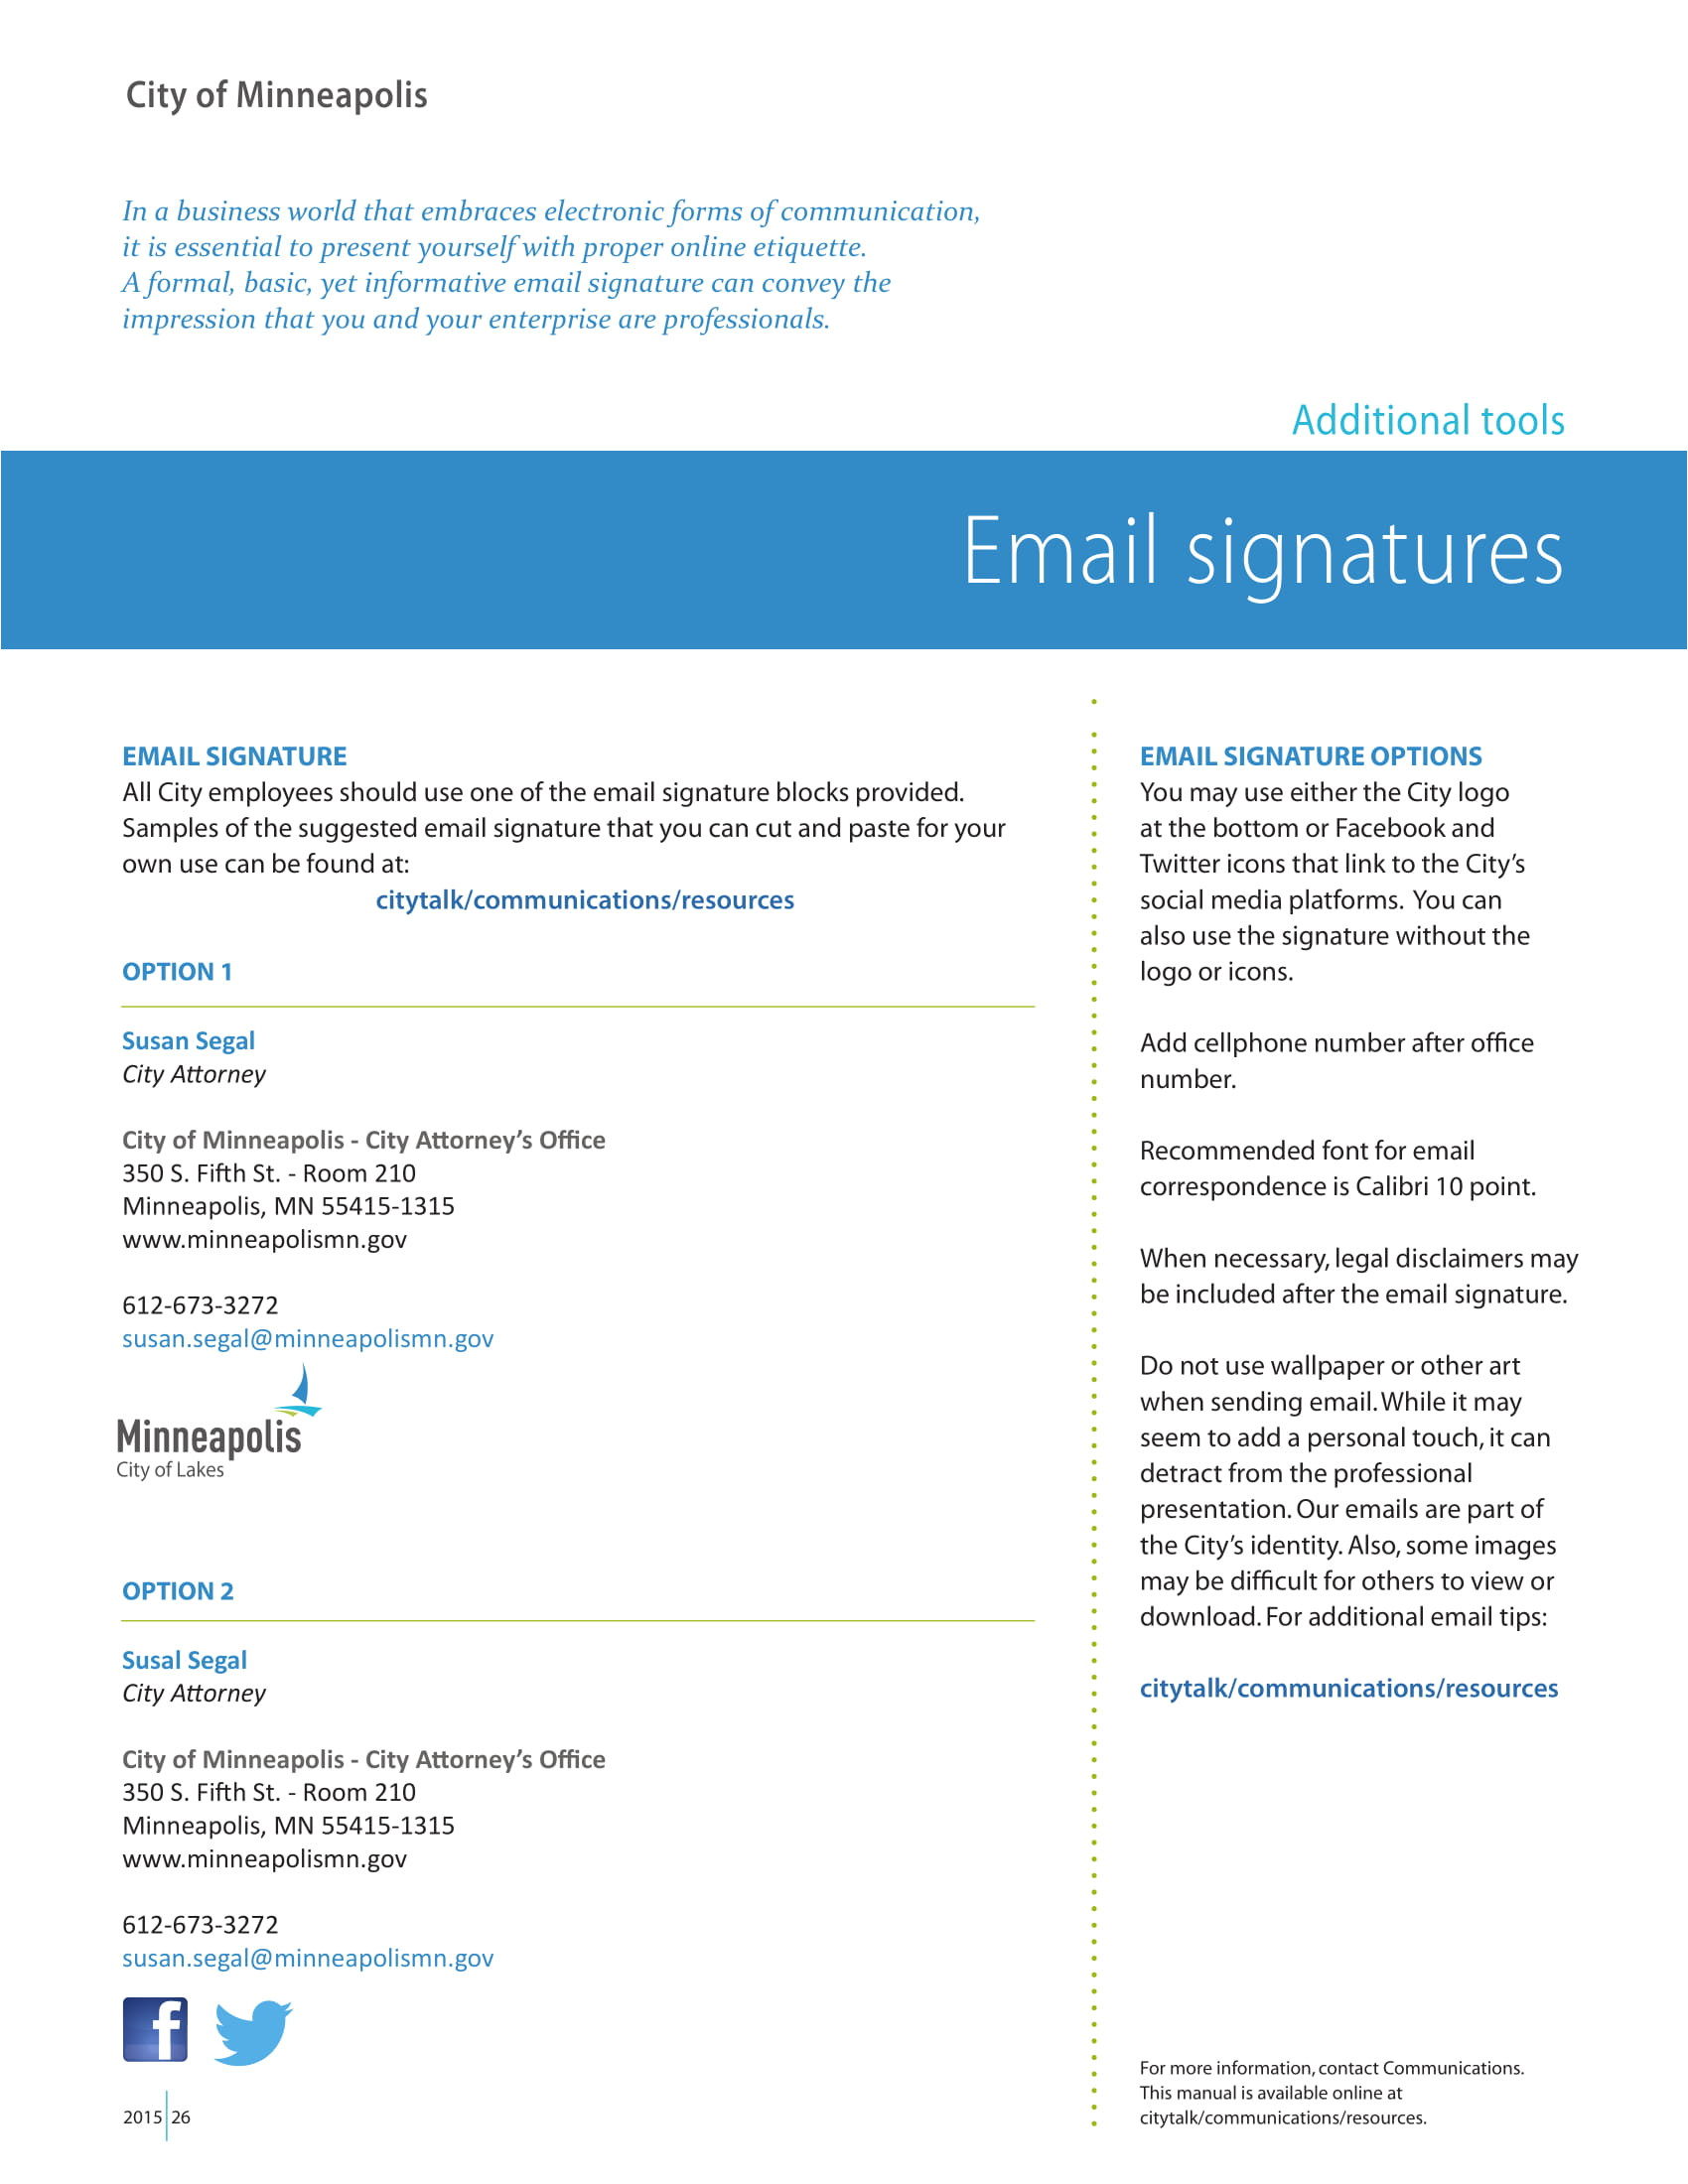 email signature examples pdf